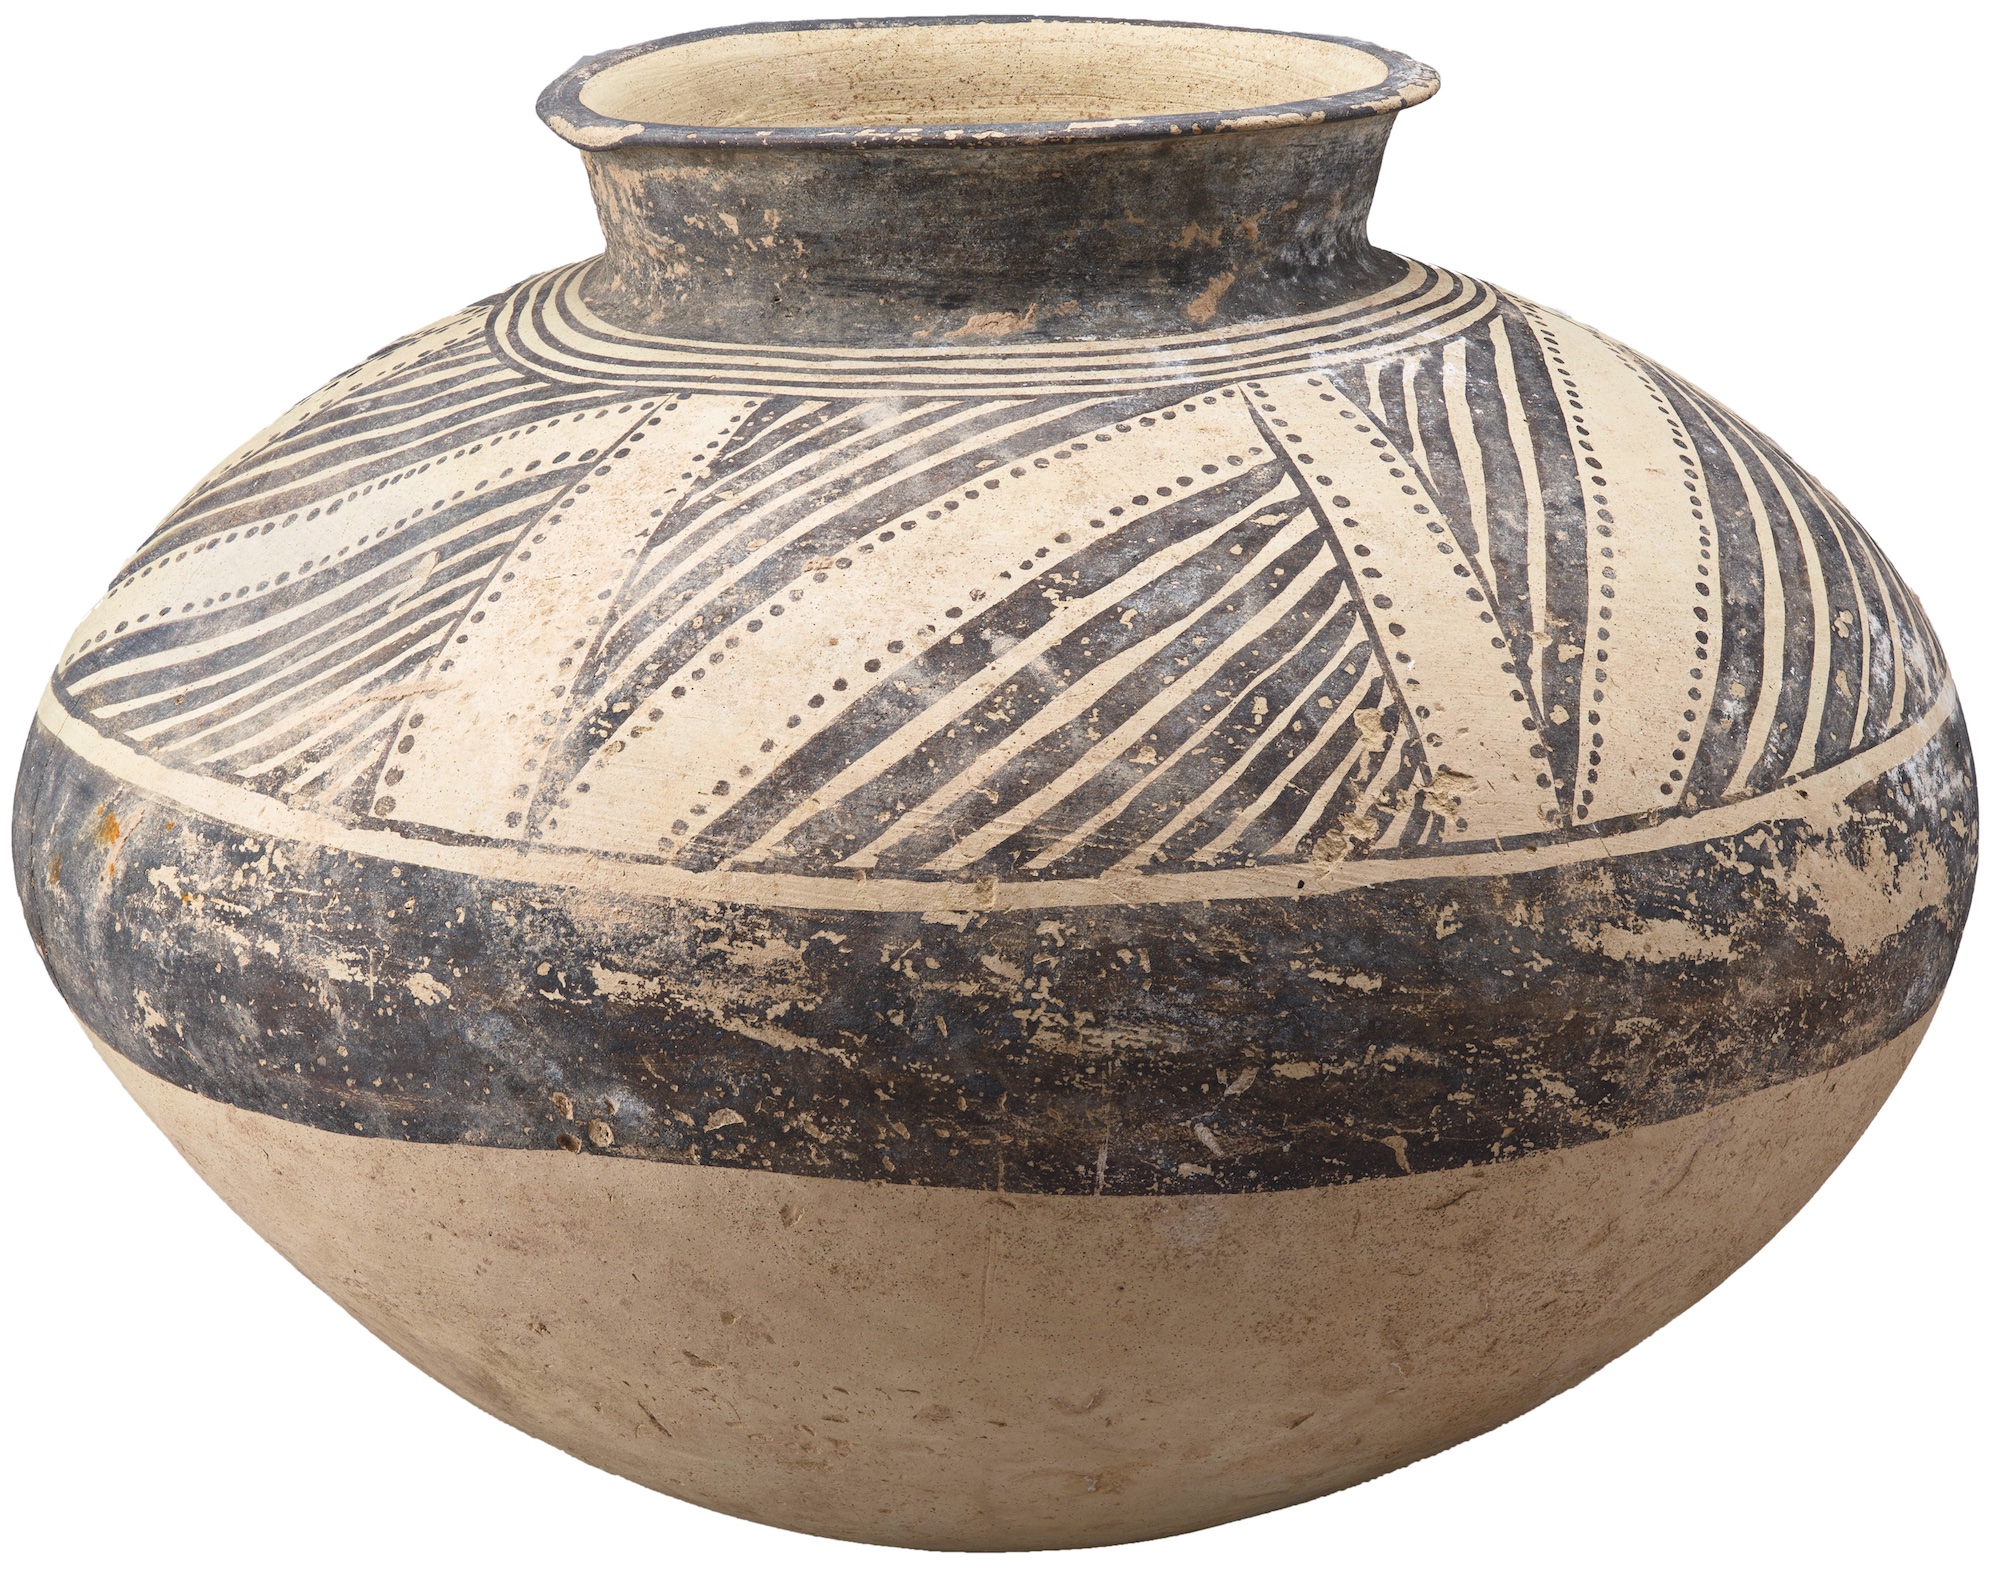 Vase fermé à engobe noir et à décor géométrique de la culture d’Obeid (vers 4000 avant notre ère). © RMN-GP (musée du Louvre), Mathieu Rabeau / SP